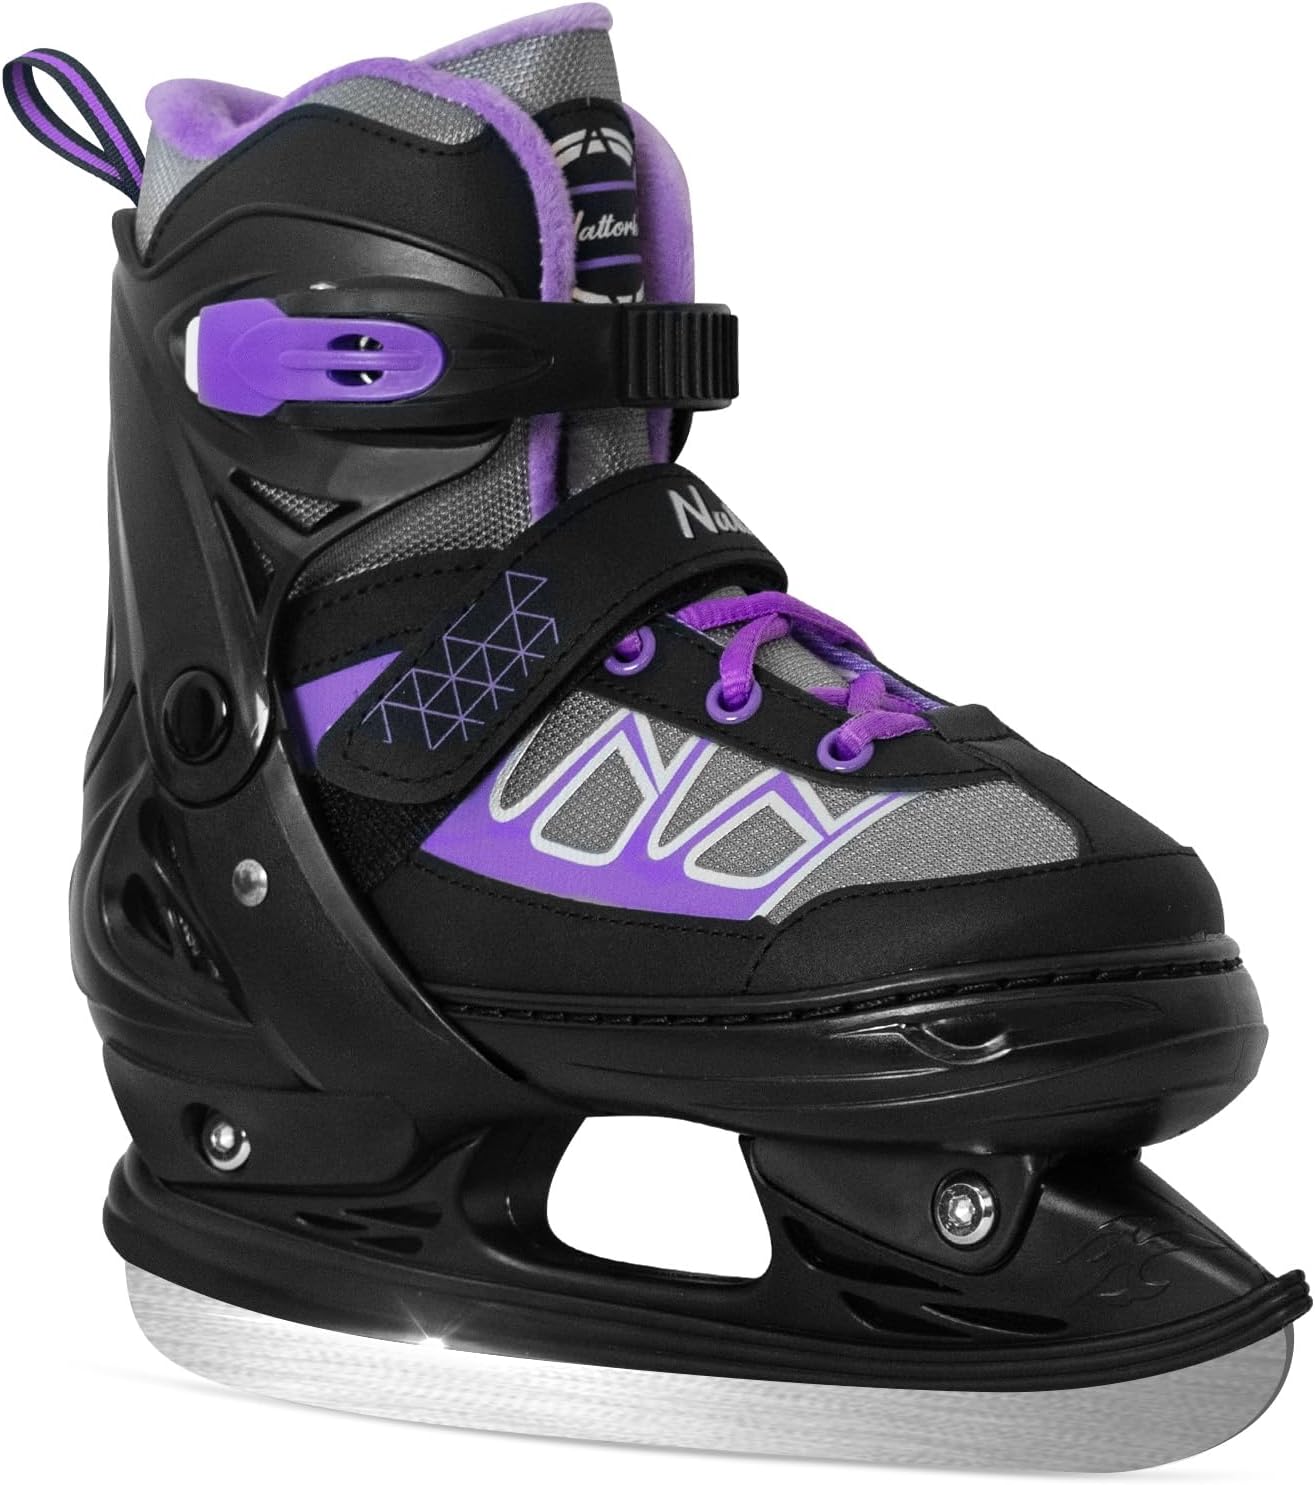 Nattork Adjustable Ice Skates - Purple